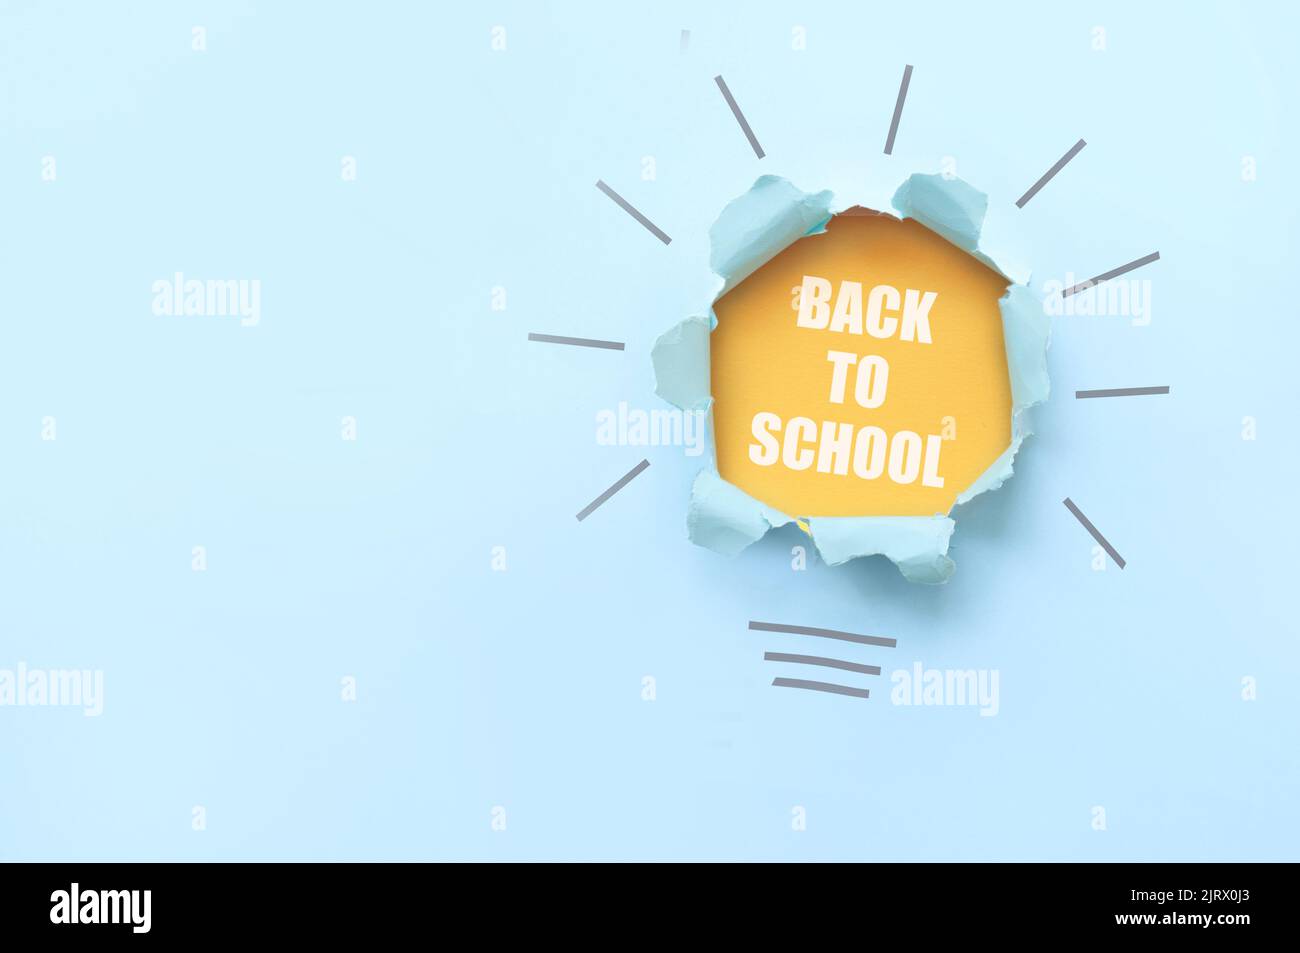 La forma de la bombilla de vuelta a la escuela se revela a partir de un papel rasgado con una capa naranja debajo Foto de stock